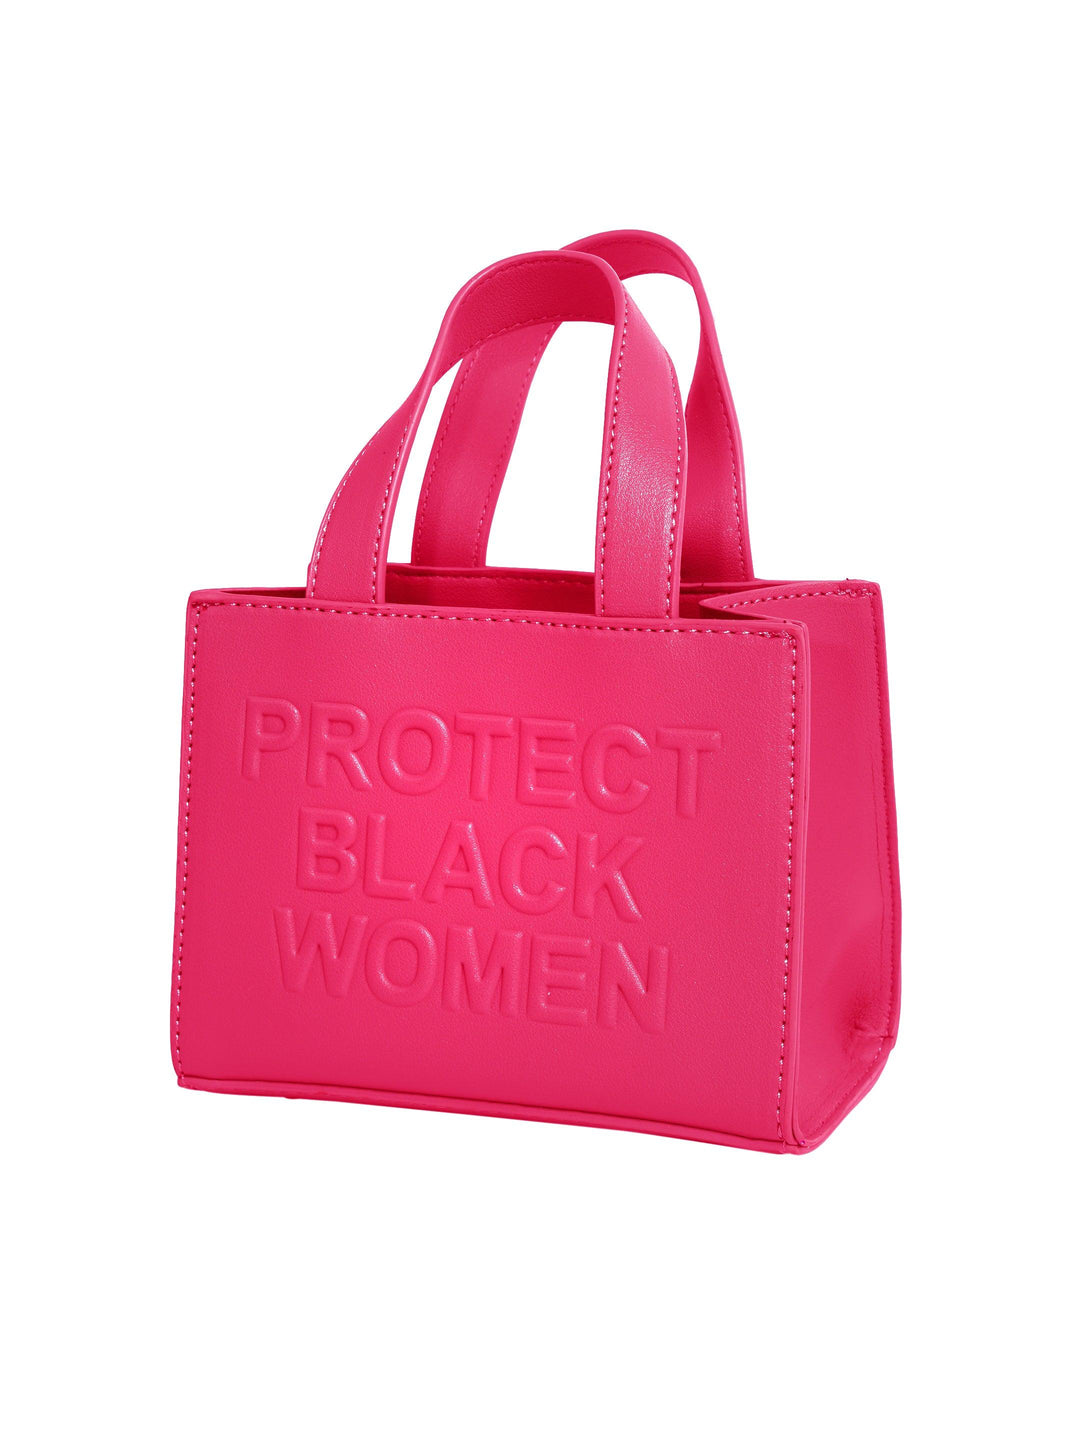 Protect Black Women Mini Bag- Vegan Blush